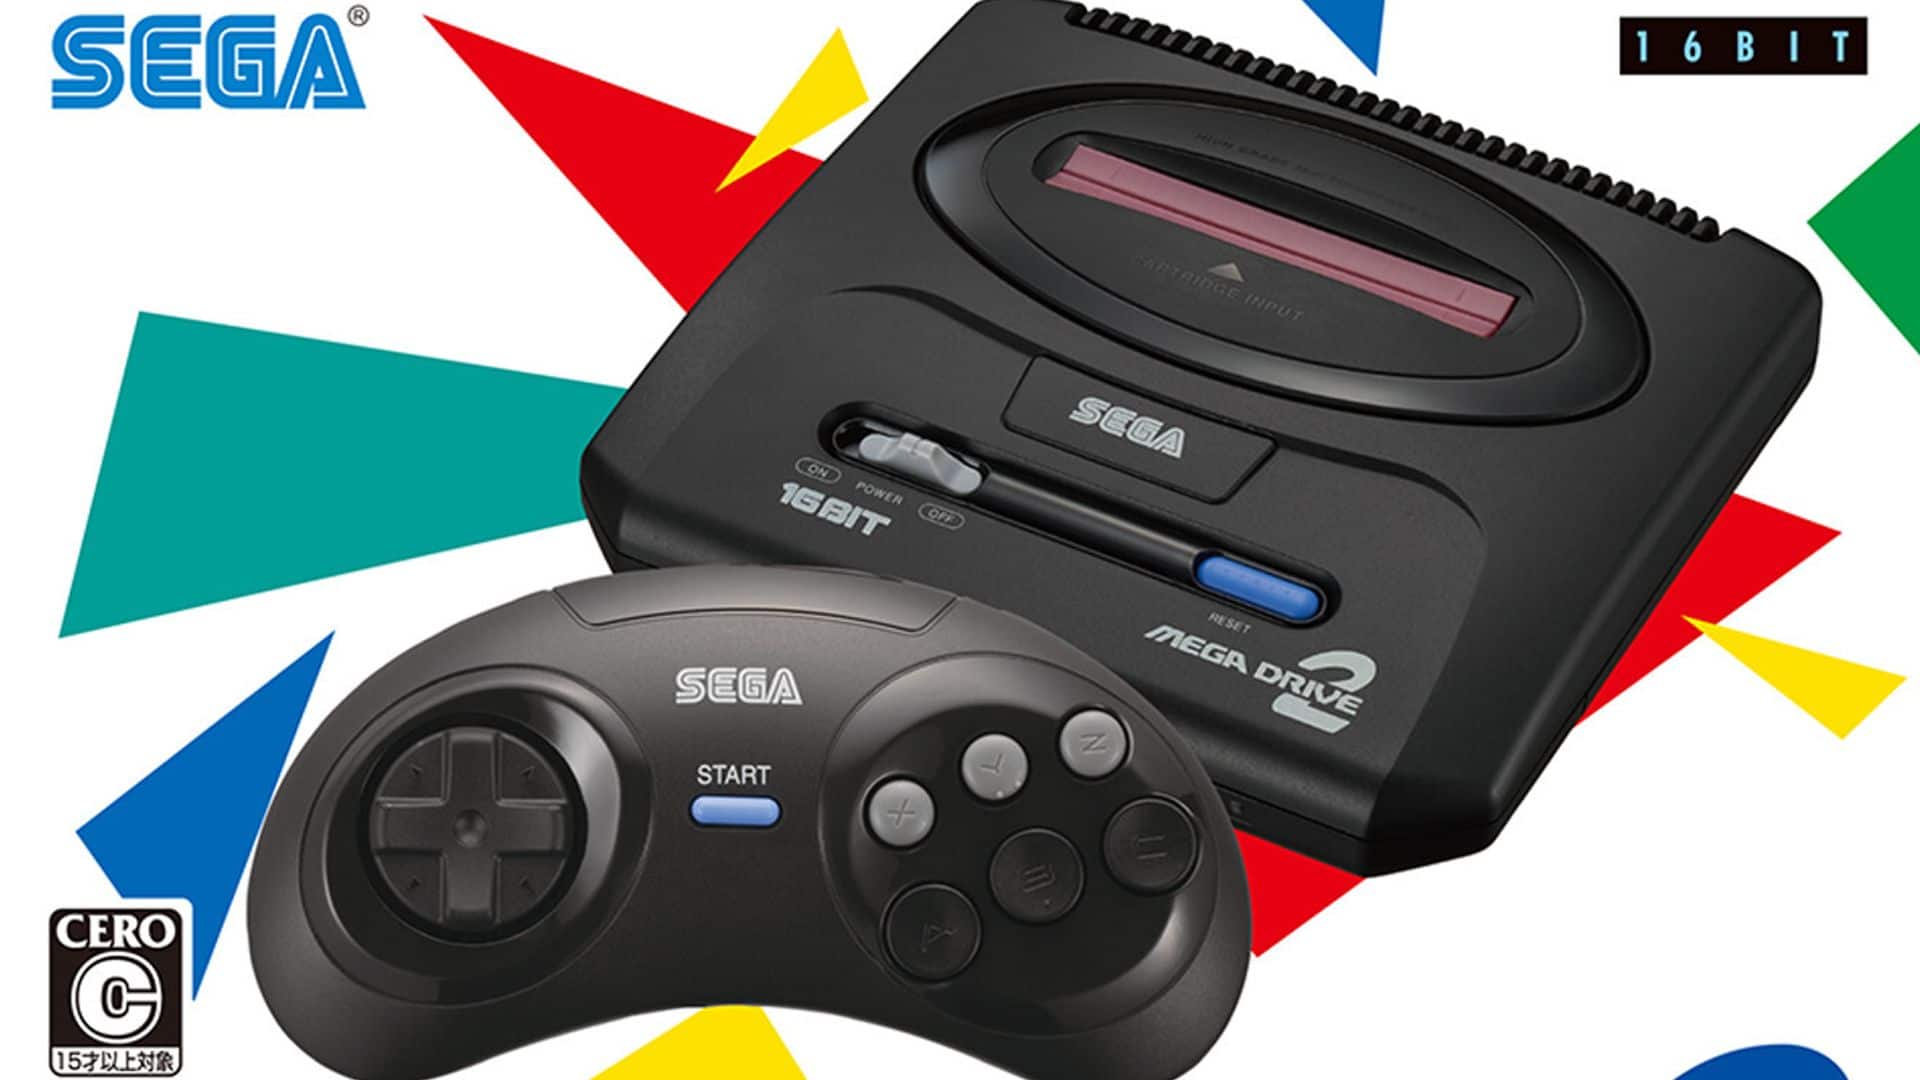 Sega Genesis / Mega Drive Mini 2 amplía aun más su catálogo de juegos